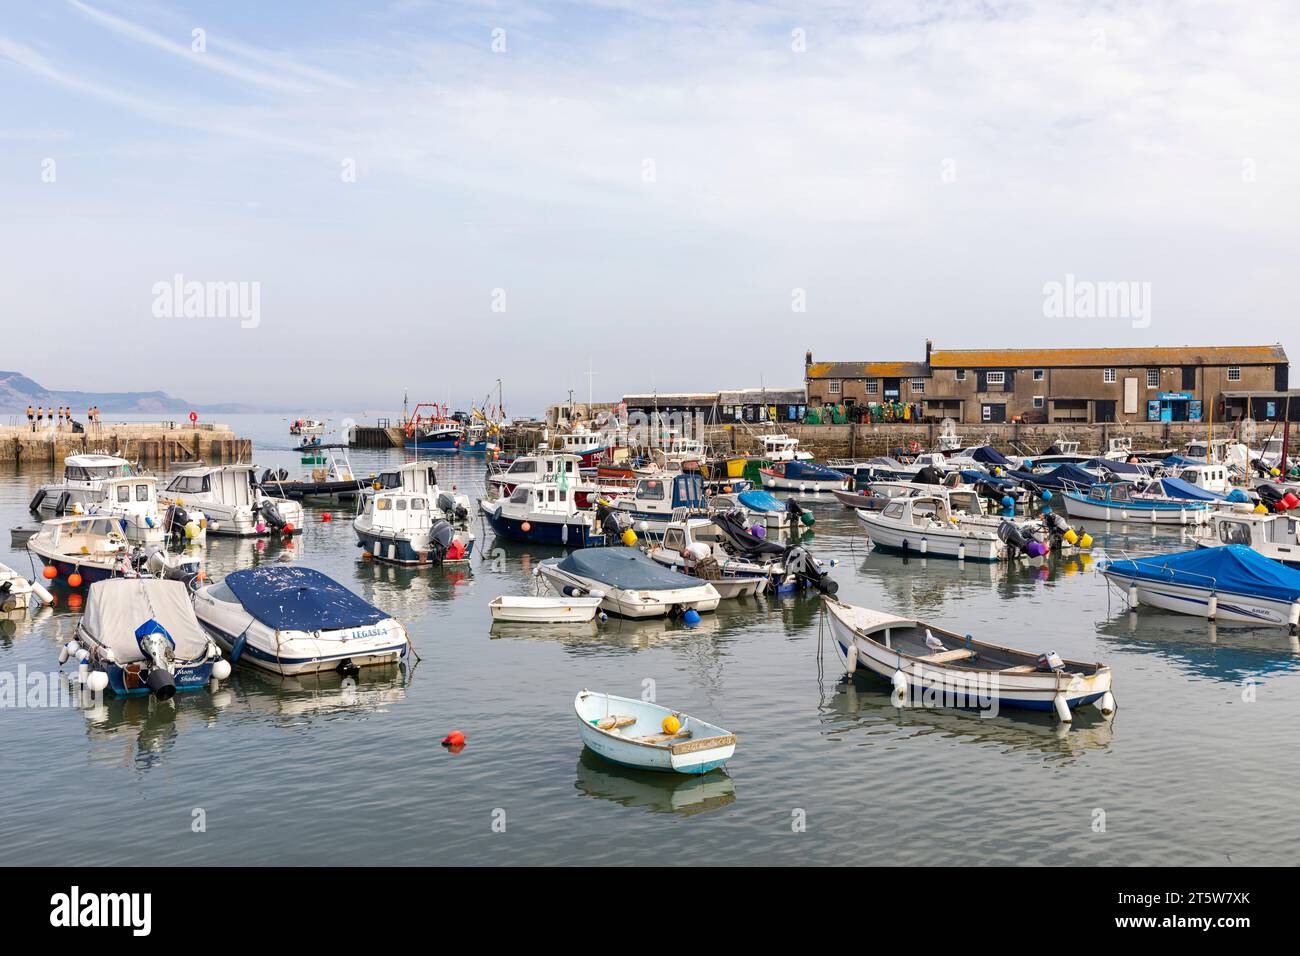 Lyme Regis Dorset ville sur la côte anglaise, port et bateaux yachts amarrés dans le port de Lyme Regis, Angleterre, Royaume-Uni, 2023 Banque D'Images